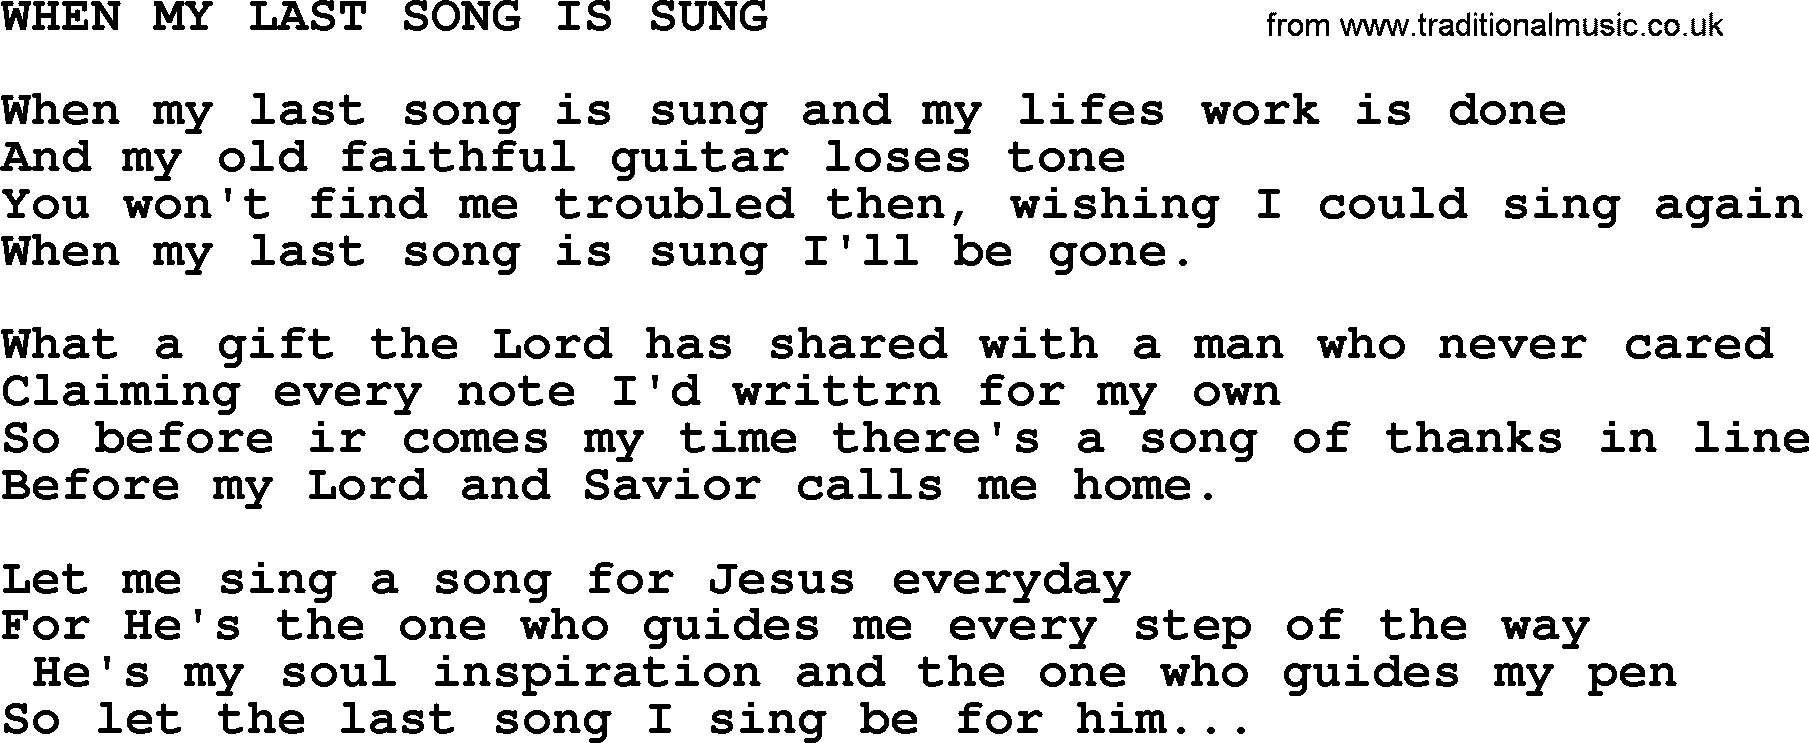 Merle Haggard song: When My Last Song Is Sung, lyrics.